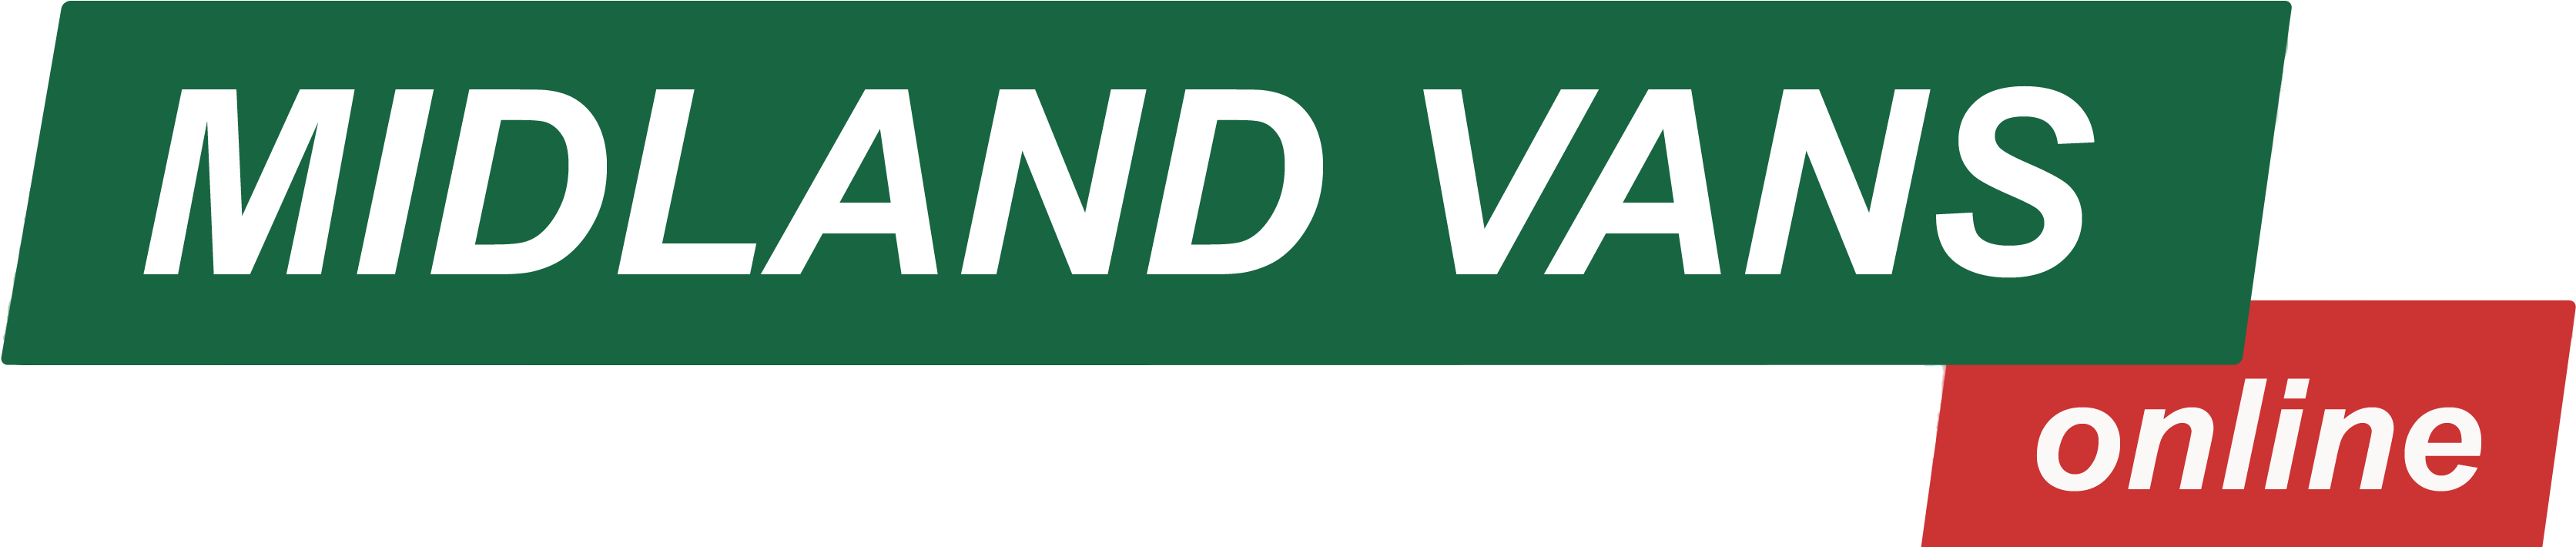 Midland Vans Online - Sign Clipart (3356x709), Png Download